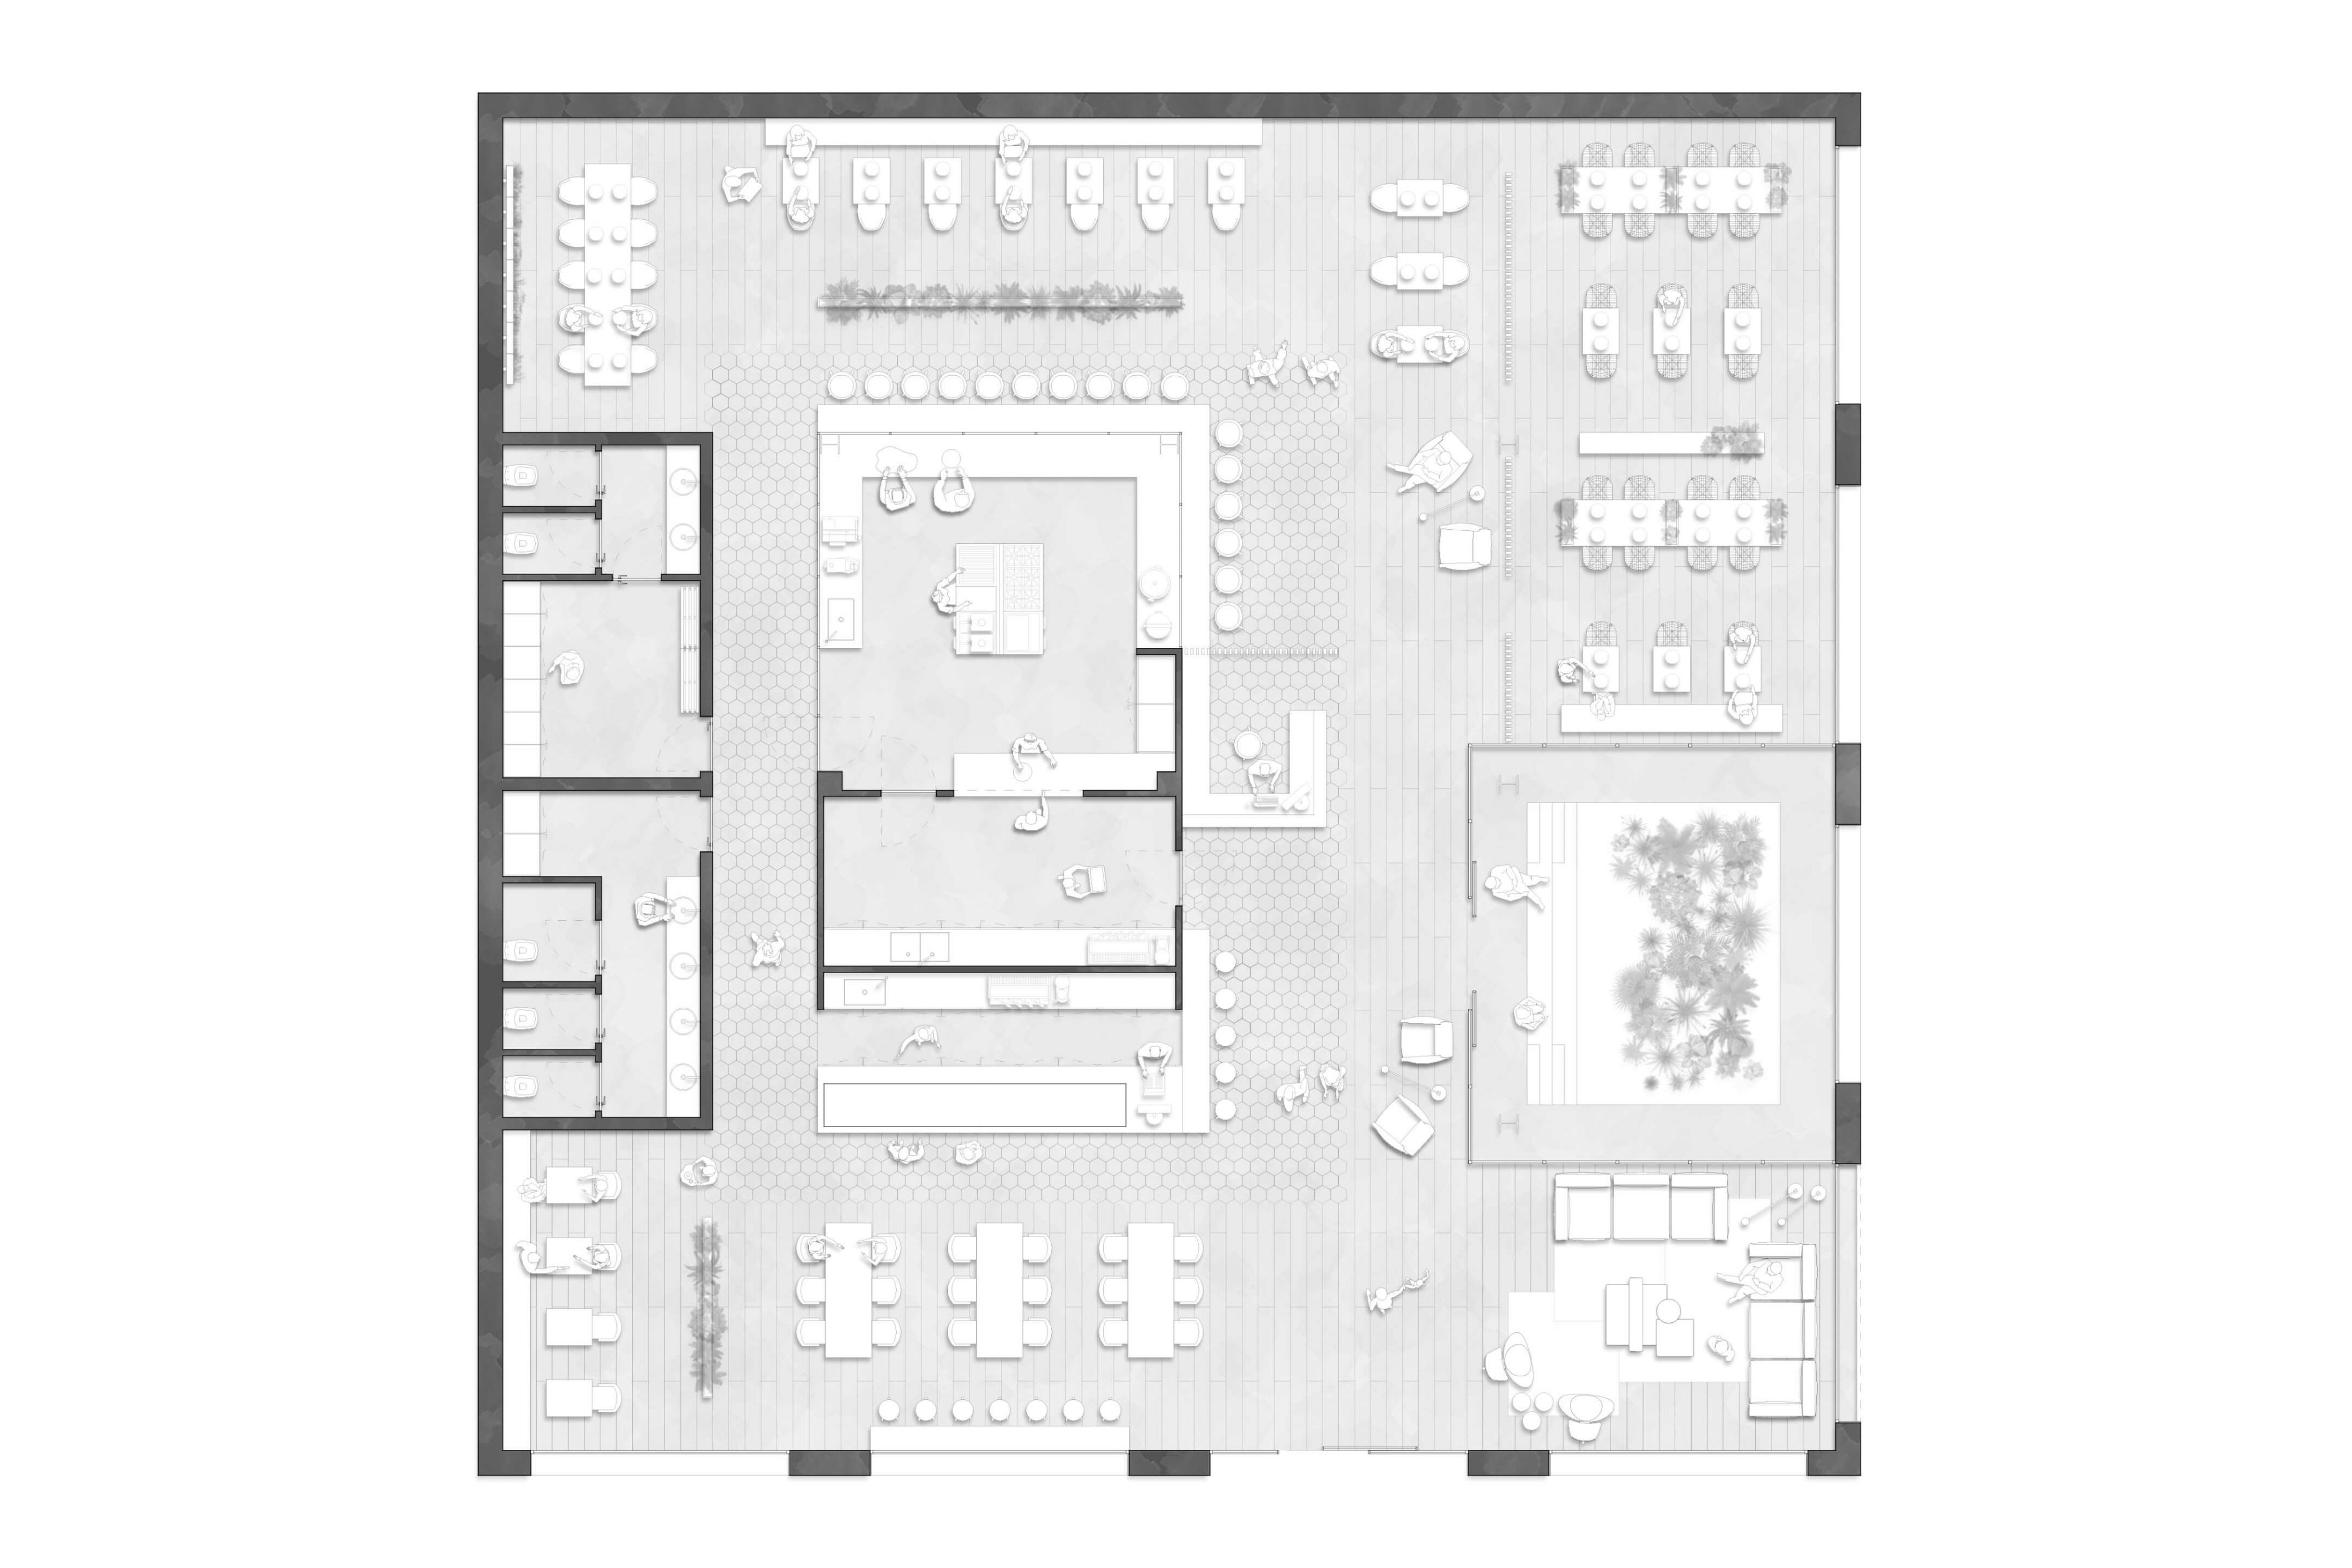 Pascêre Ciboteca by ZDA | Zupelli Design Architettura